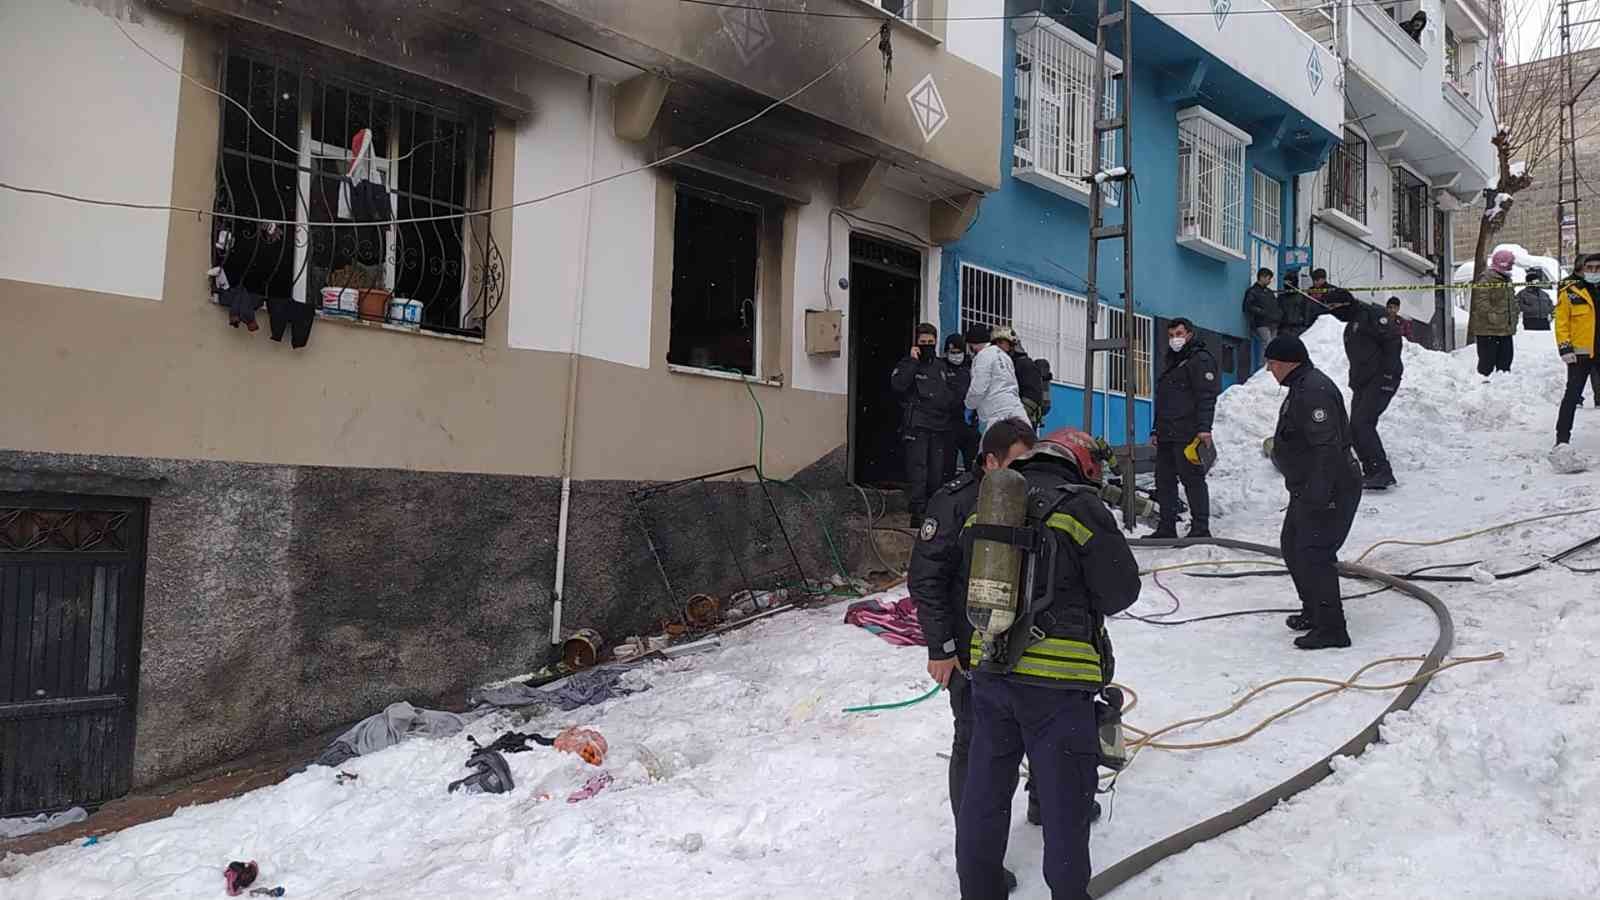 Gaziantep’te yangın faciası: 2 çocuk öldü #gaziantep